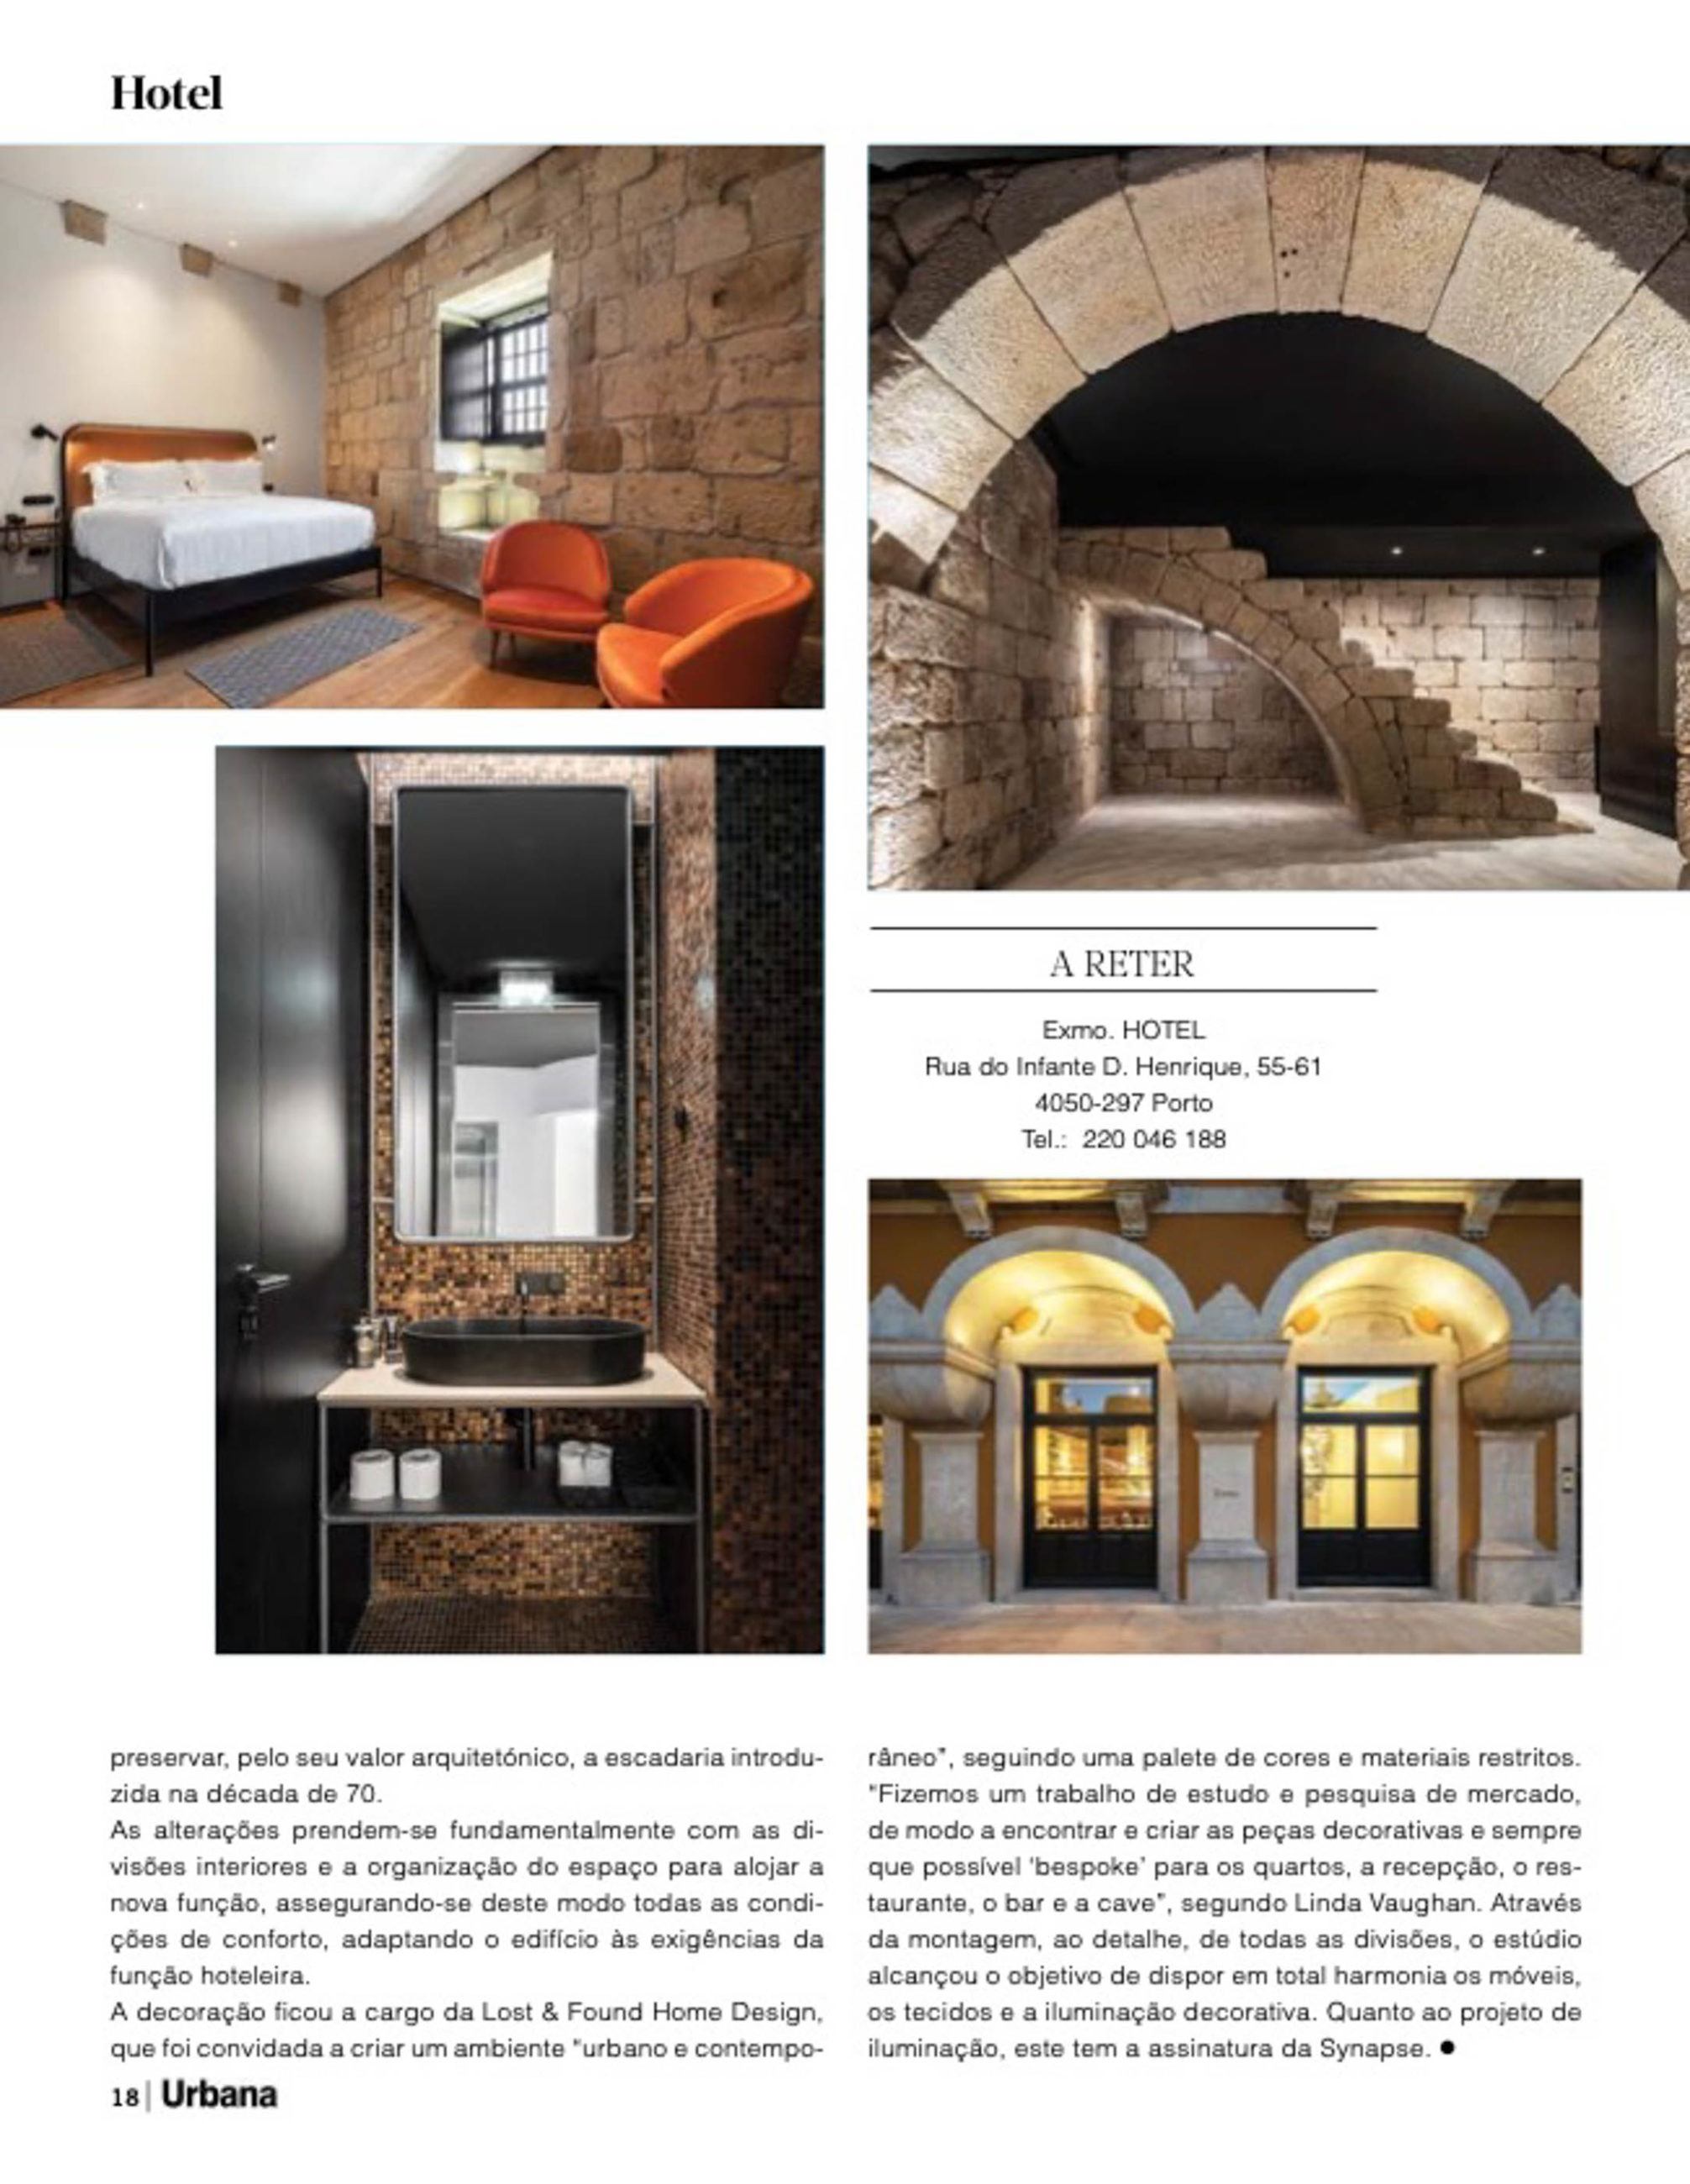 Exmo Hotel no Porto do atelier Floret Arquitectura publicado na revista Urbana com fotografia de arquitetura Ivo Tavares Studio